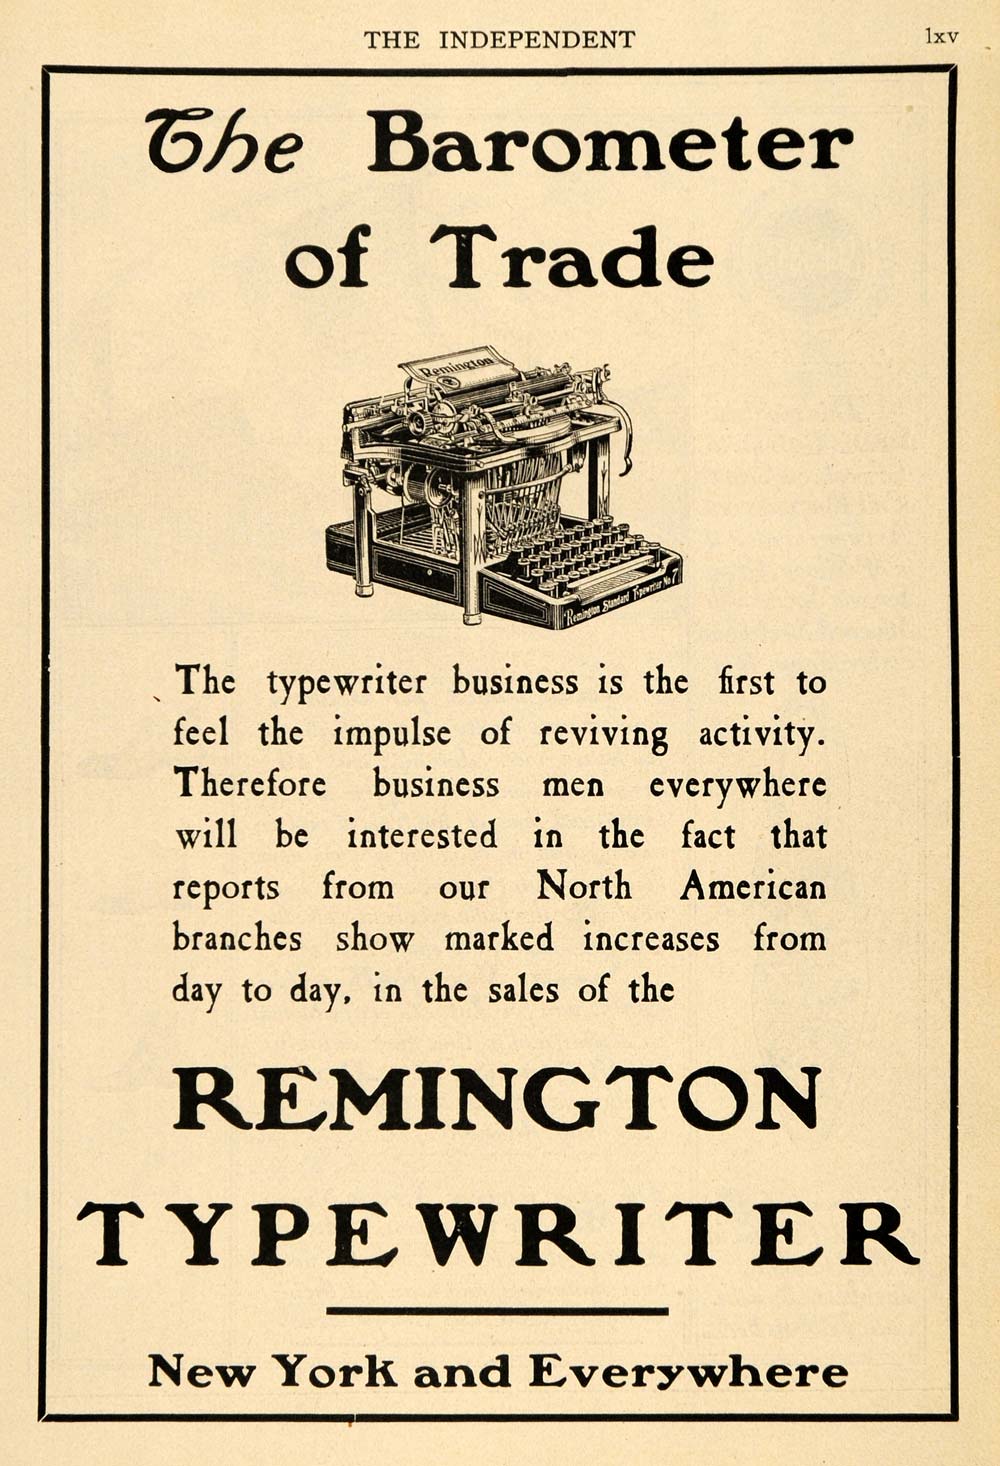 1904 Ad Remington Typewriter Barometer of Trade Antique - ORIGINAL TIN4